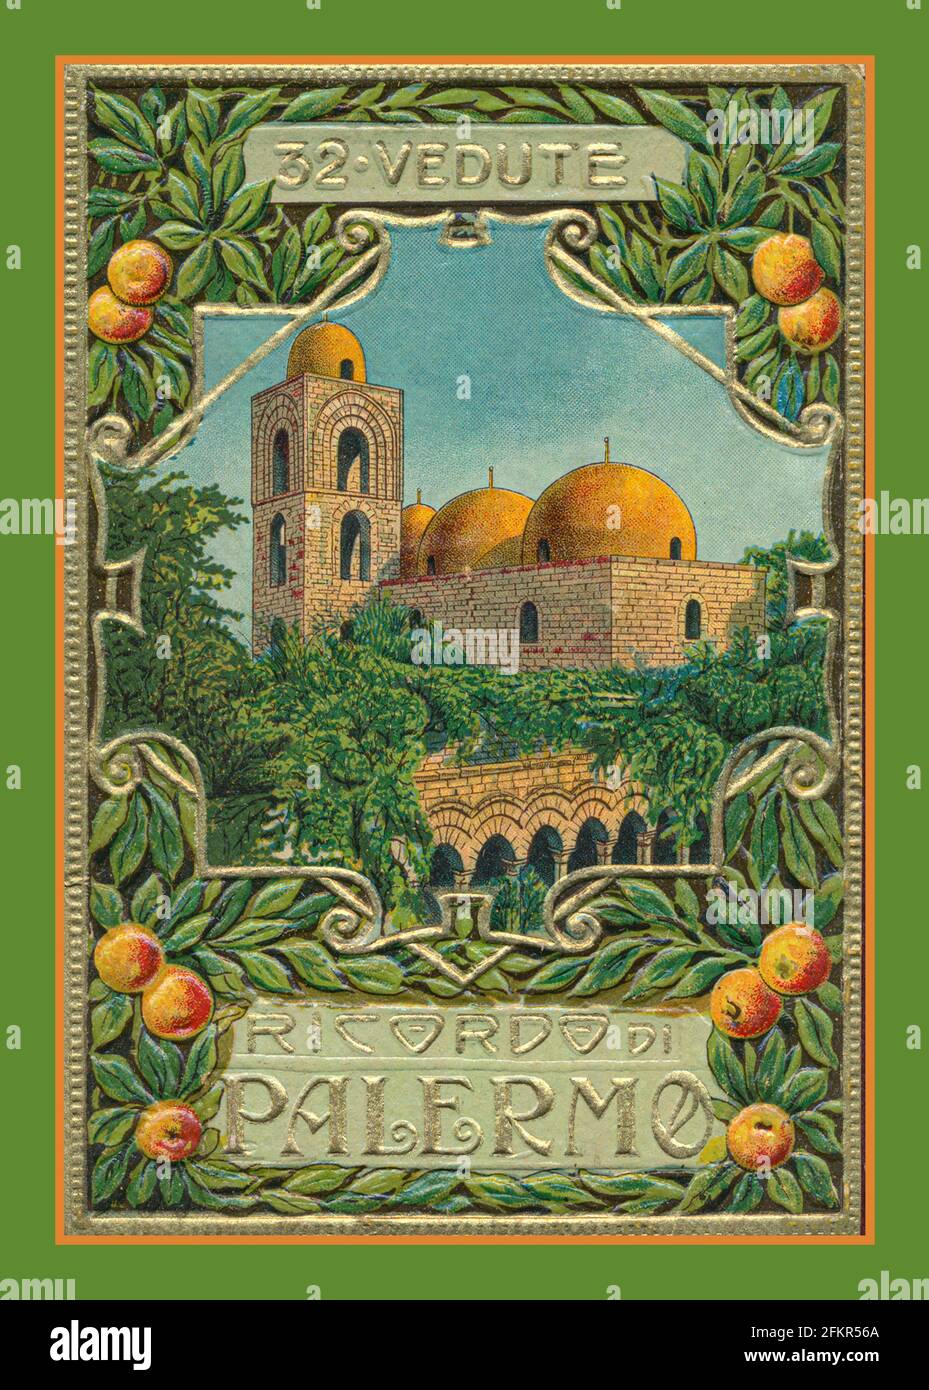 Vintage Travel Palermo 1890's-1900's 32 Vedute (views) información turística Ilustración de folleto Sicilia Italia Foto de stock